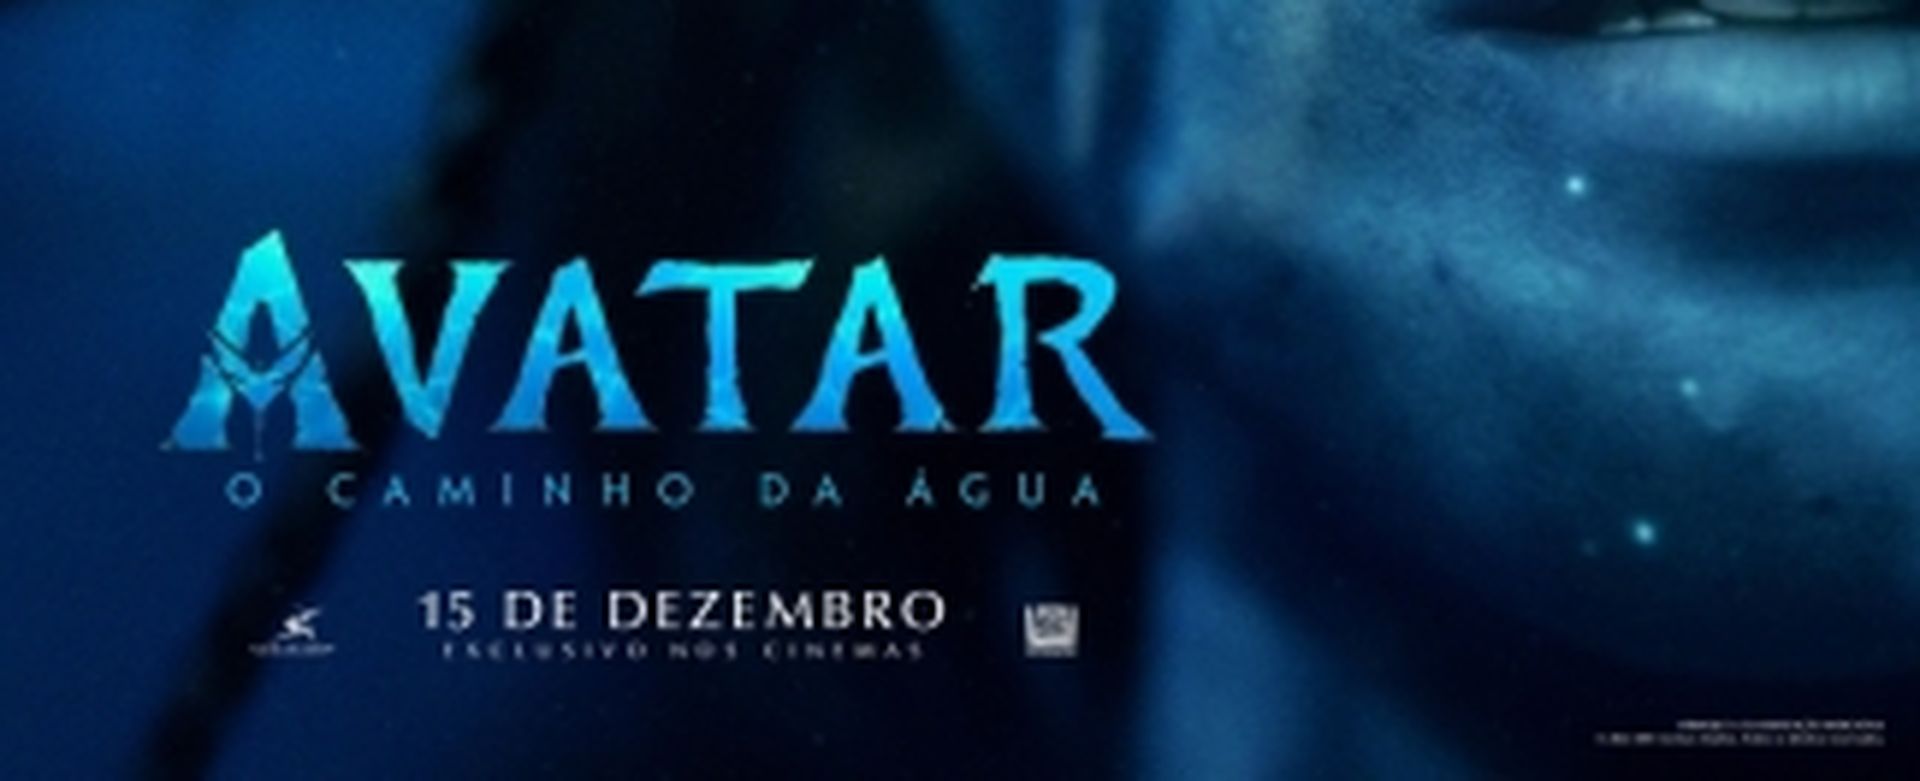 Avatar - O caminho da água - 3D